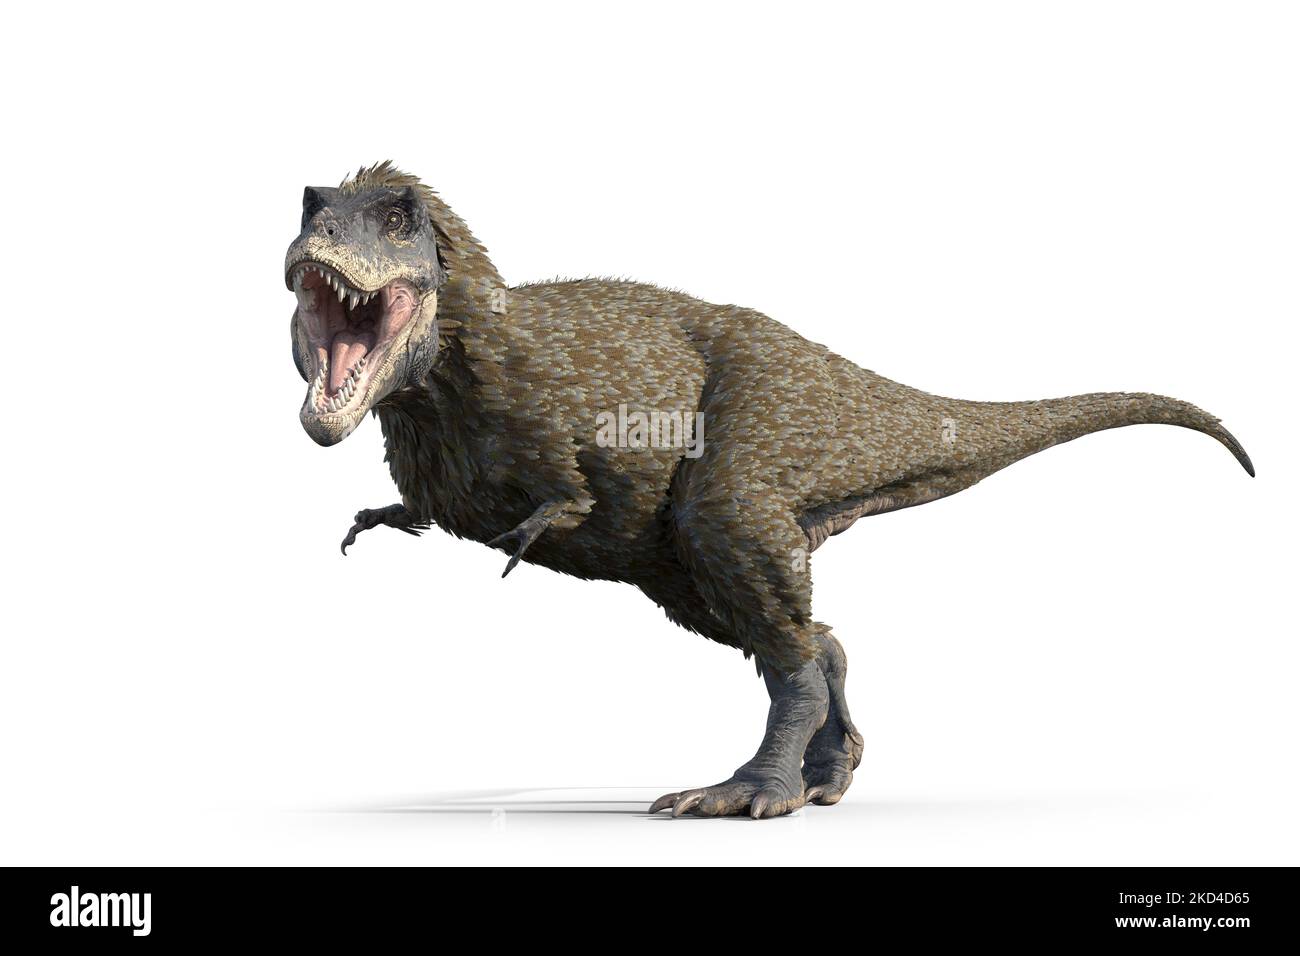 Tyrannosaurus rex dinosaur, illustration Stock Photo